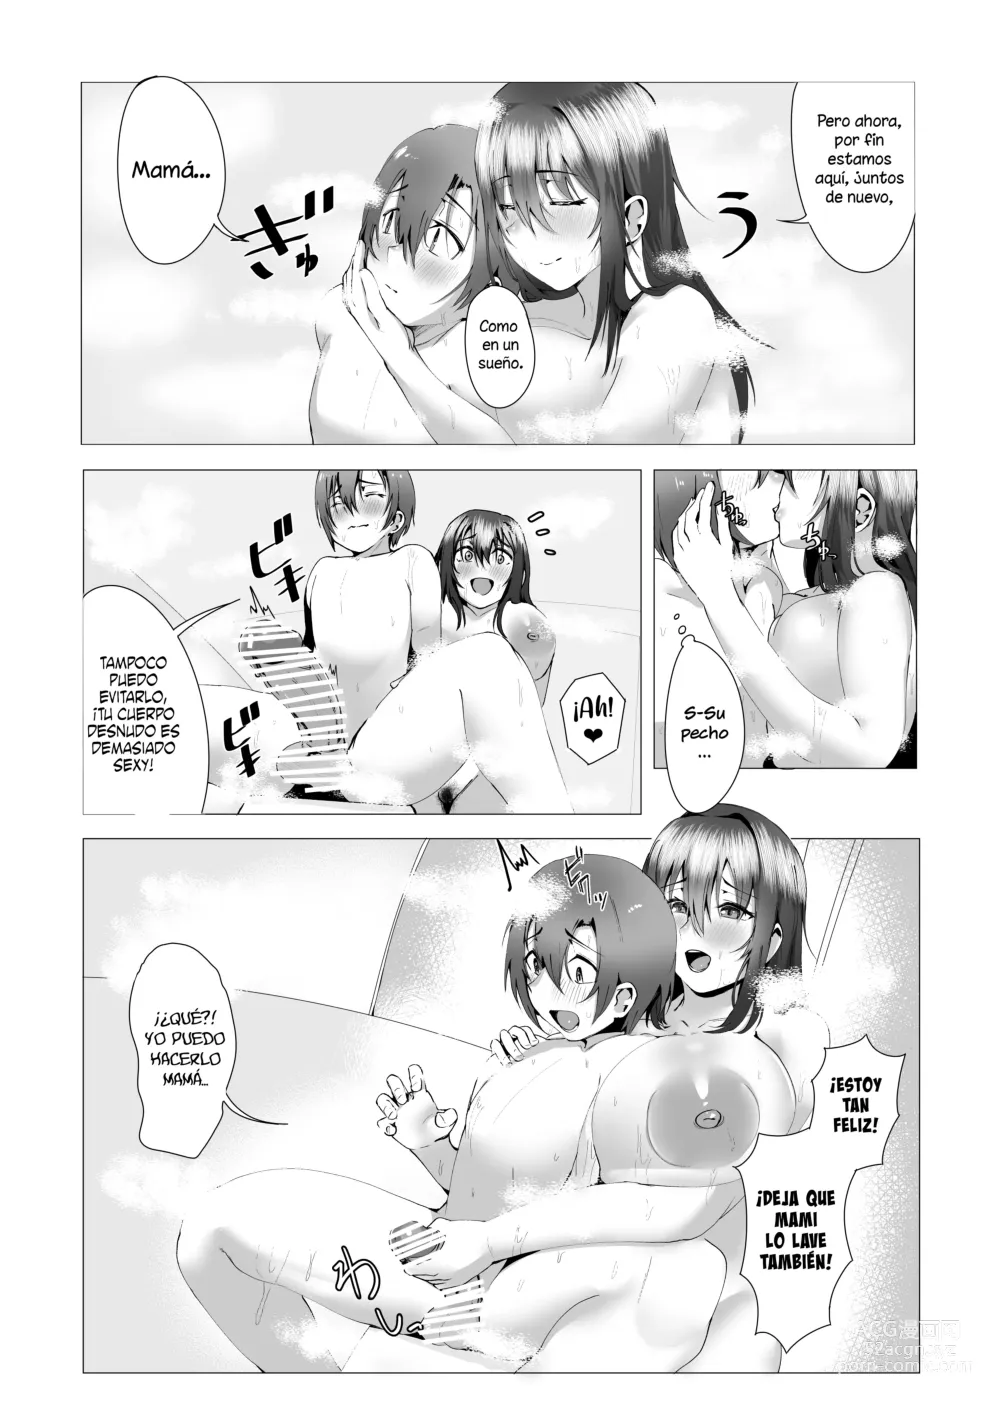 Page 28 of doujinshi ¿Estas bien con mami?